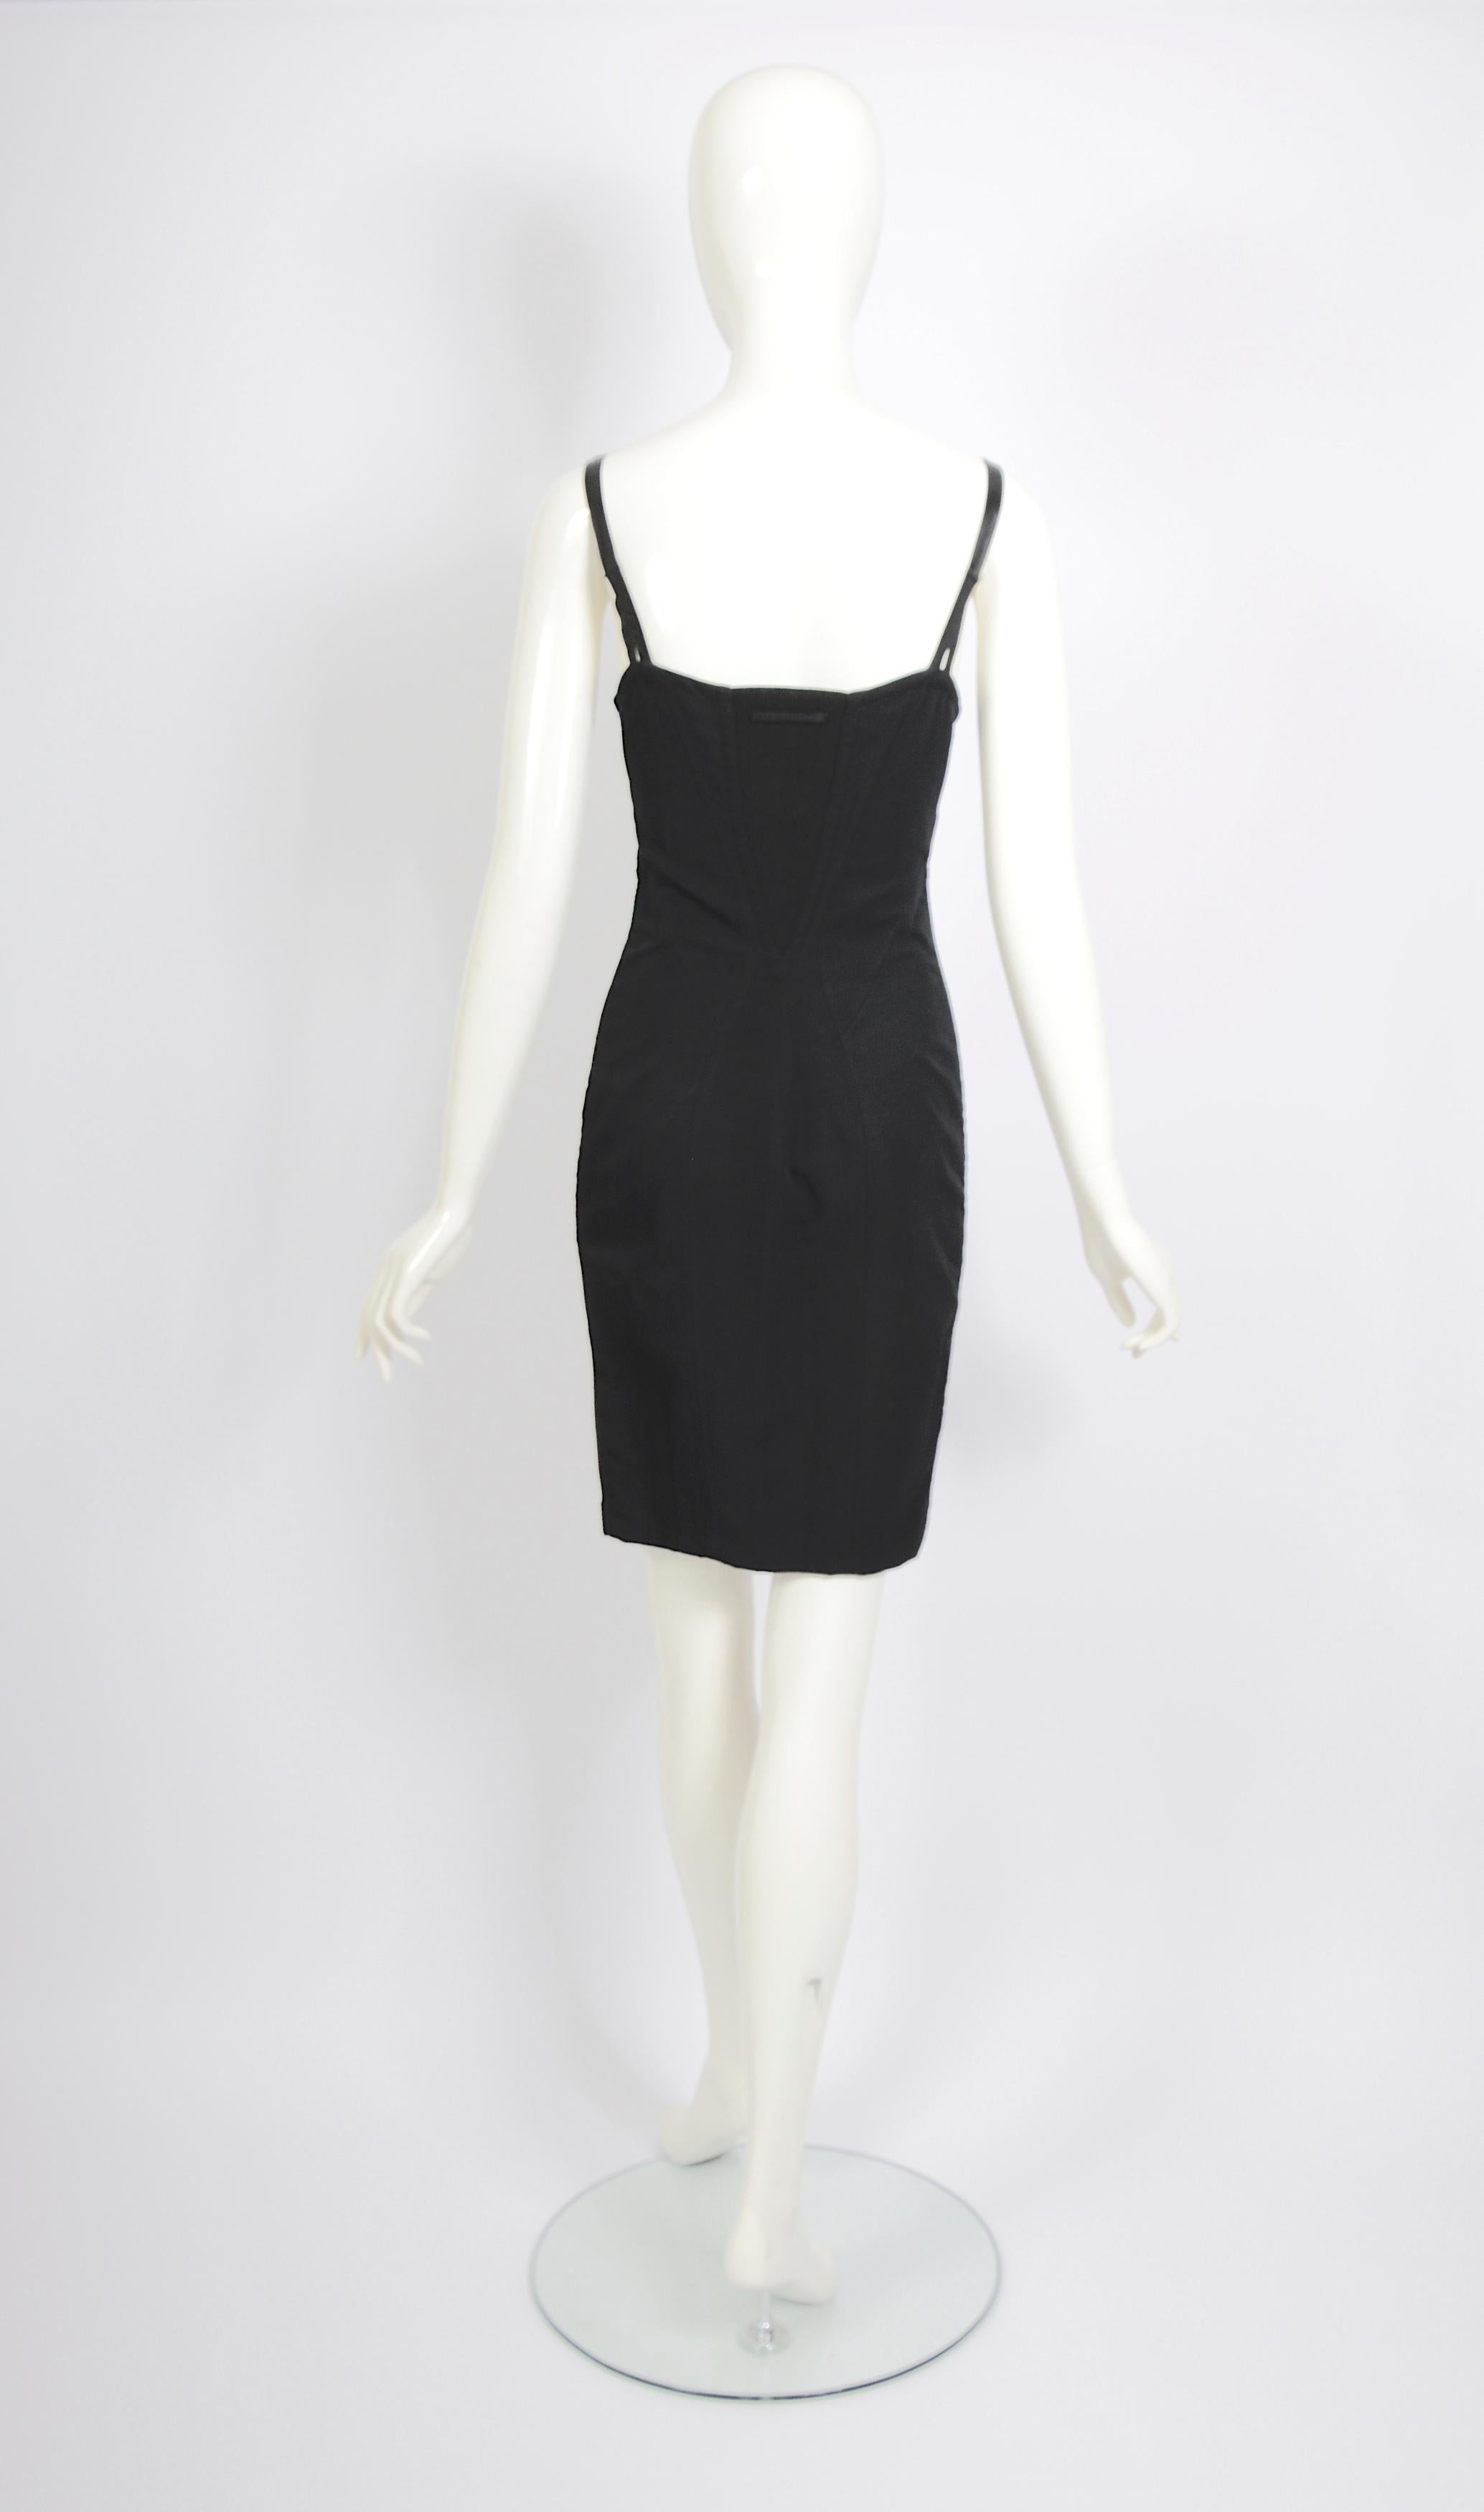 Jean Paul Gaultier 1990s vintage Important lingerie style corset bra black dress For Sale 2